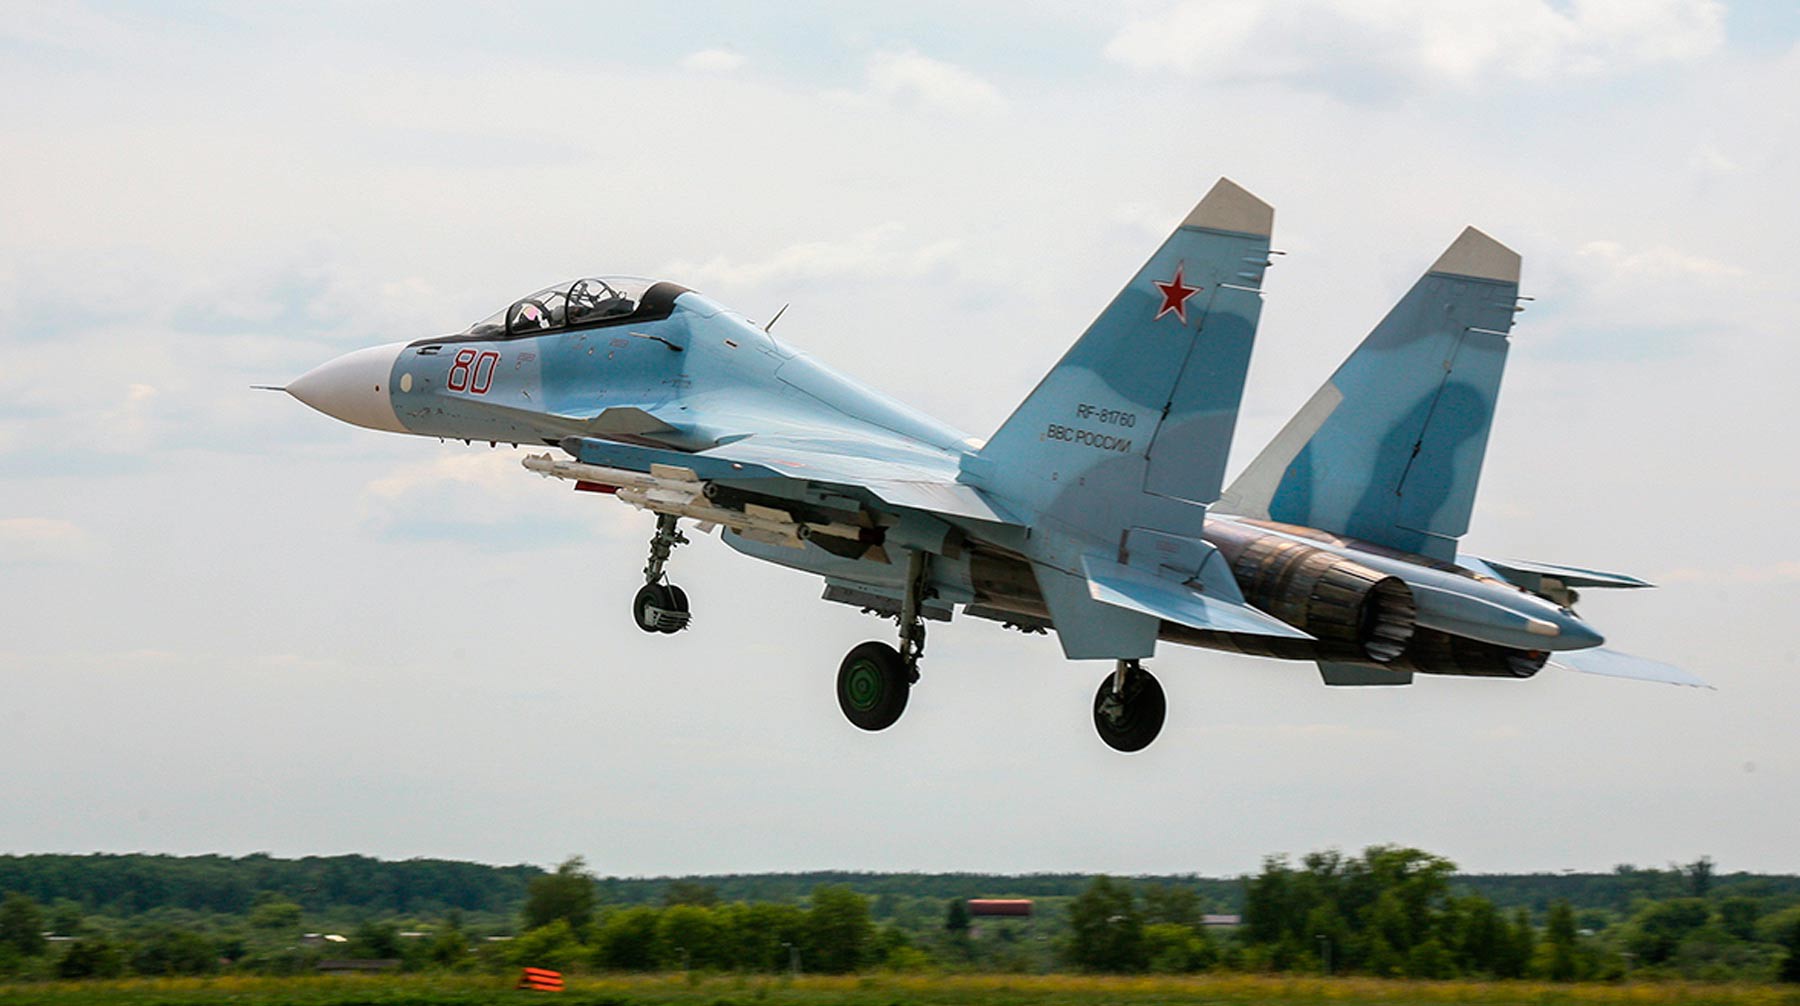 Dailystorm - Истребитель Су-30 потерпел крушение в Тверской области